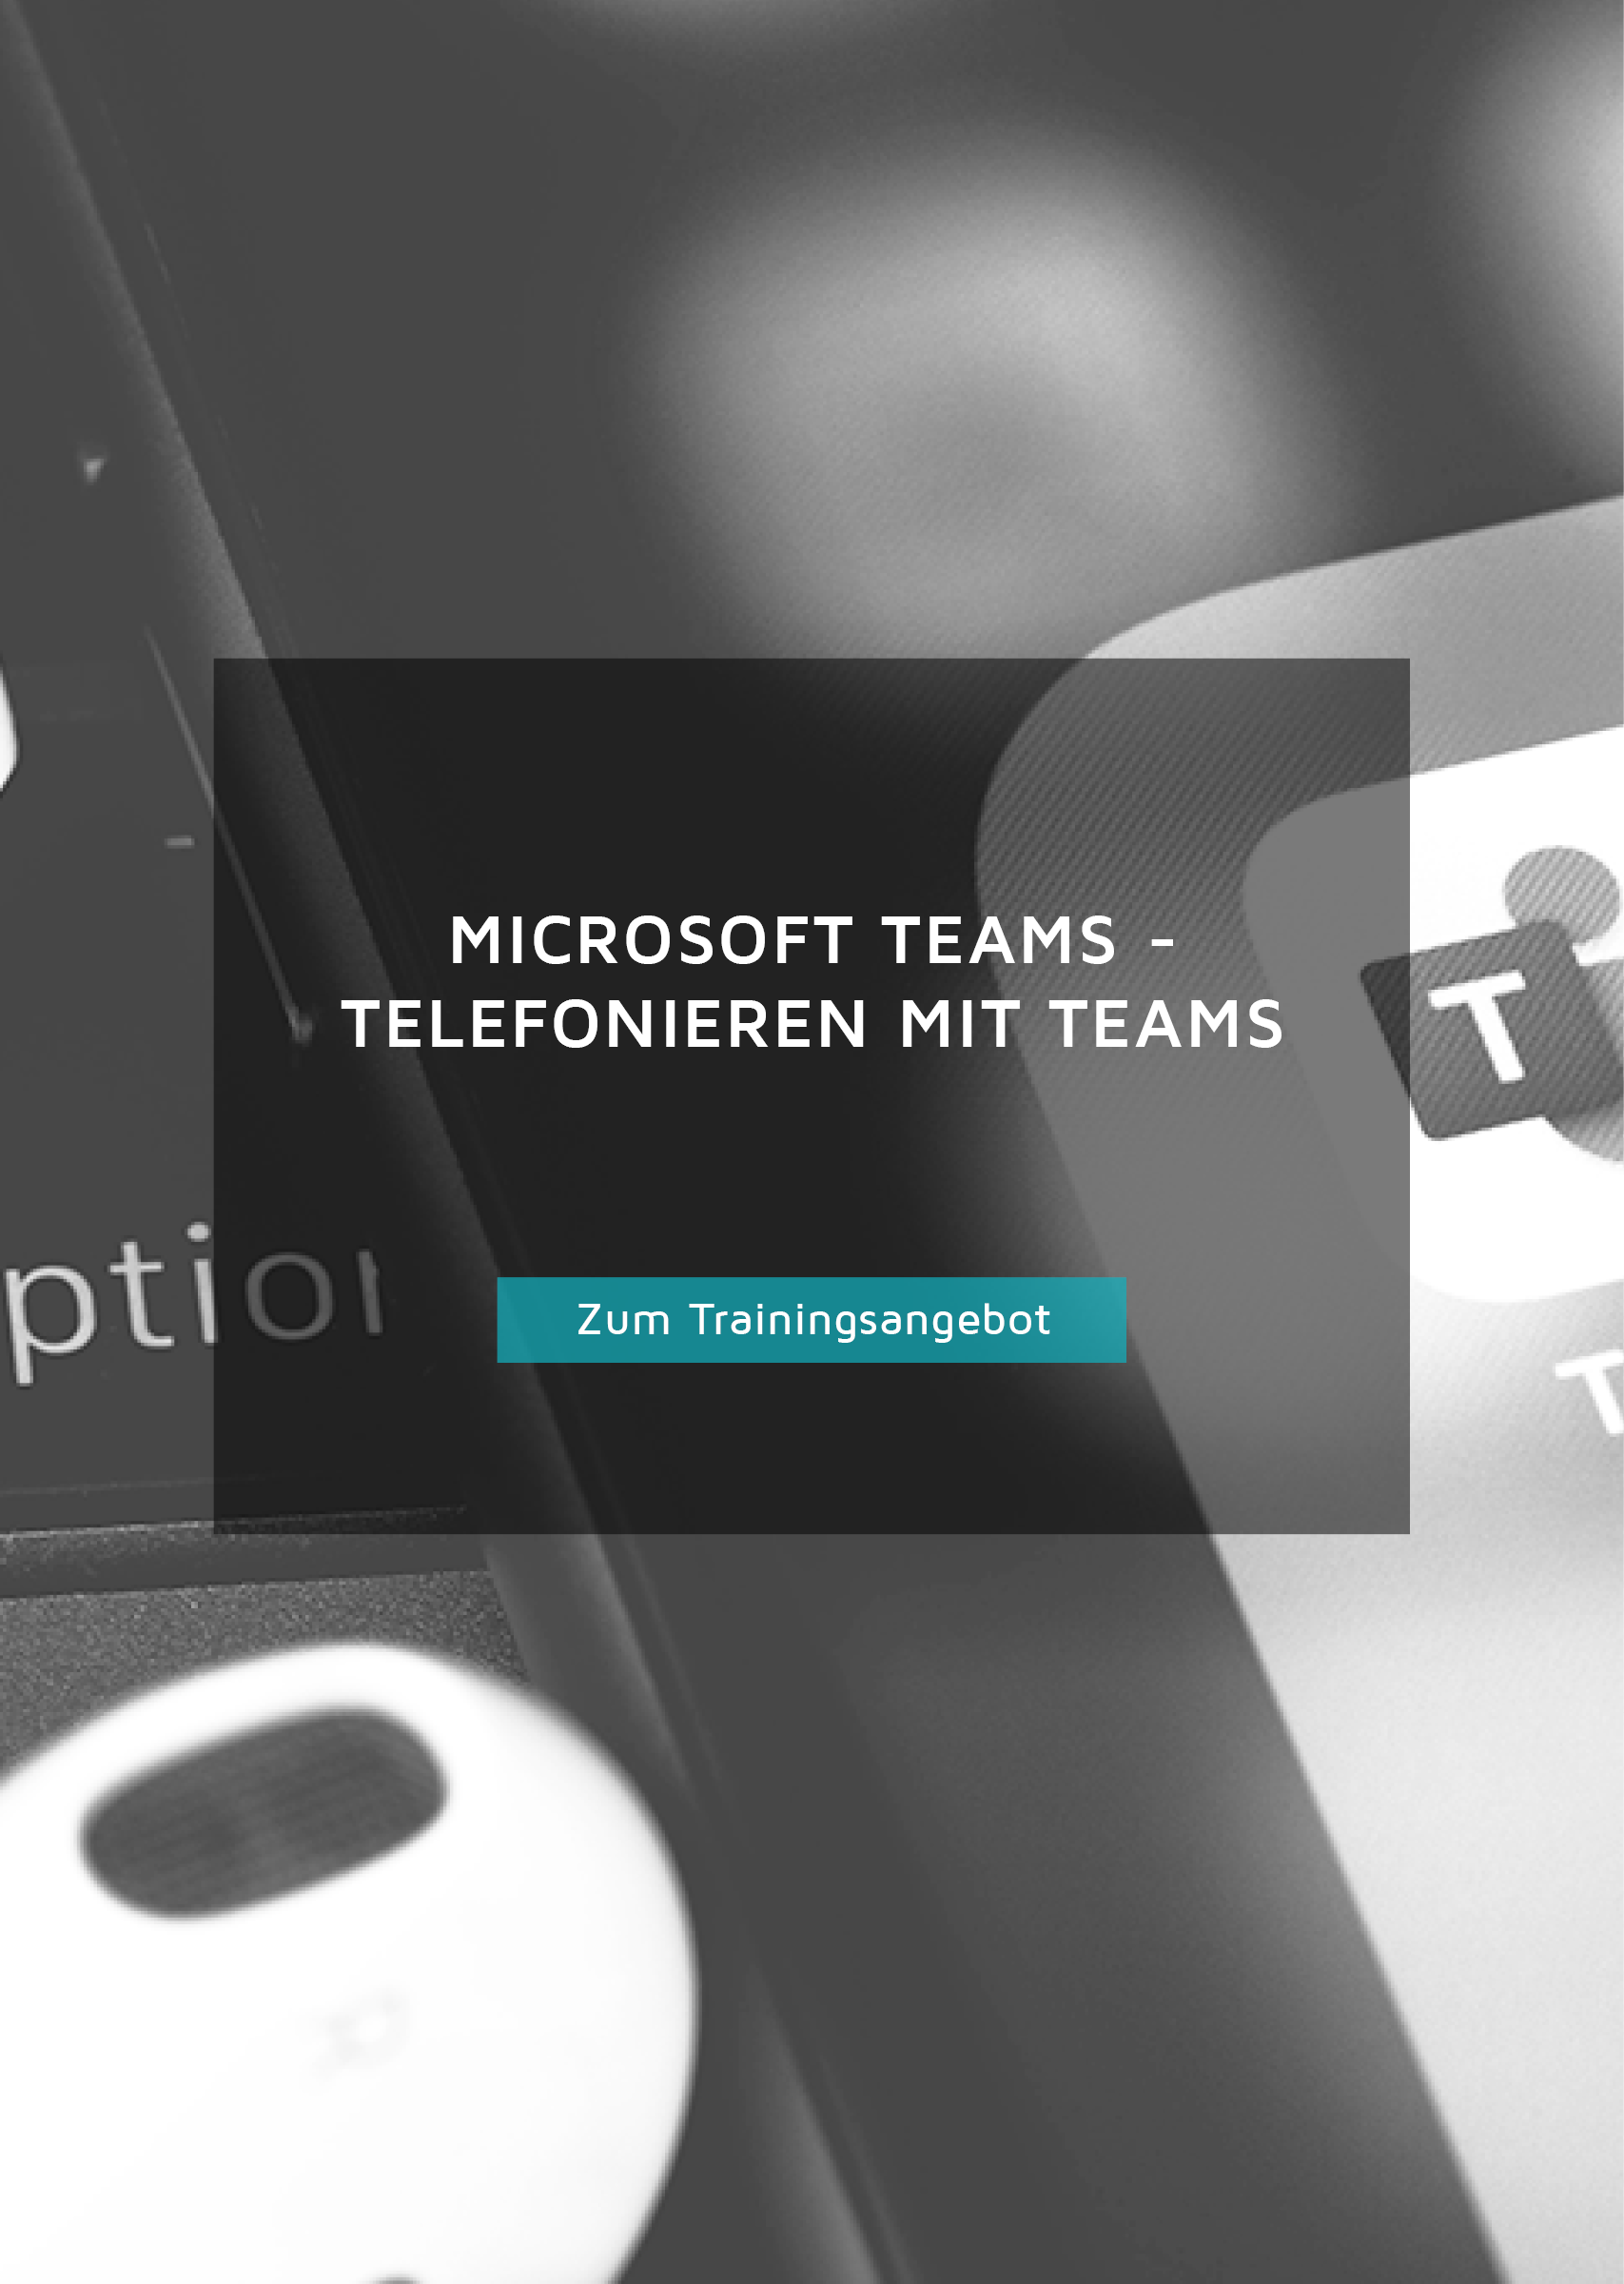 Trainingsangebot für Microsoft Teams, Telefonieren mit Teams, Button.